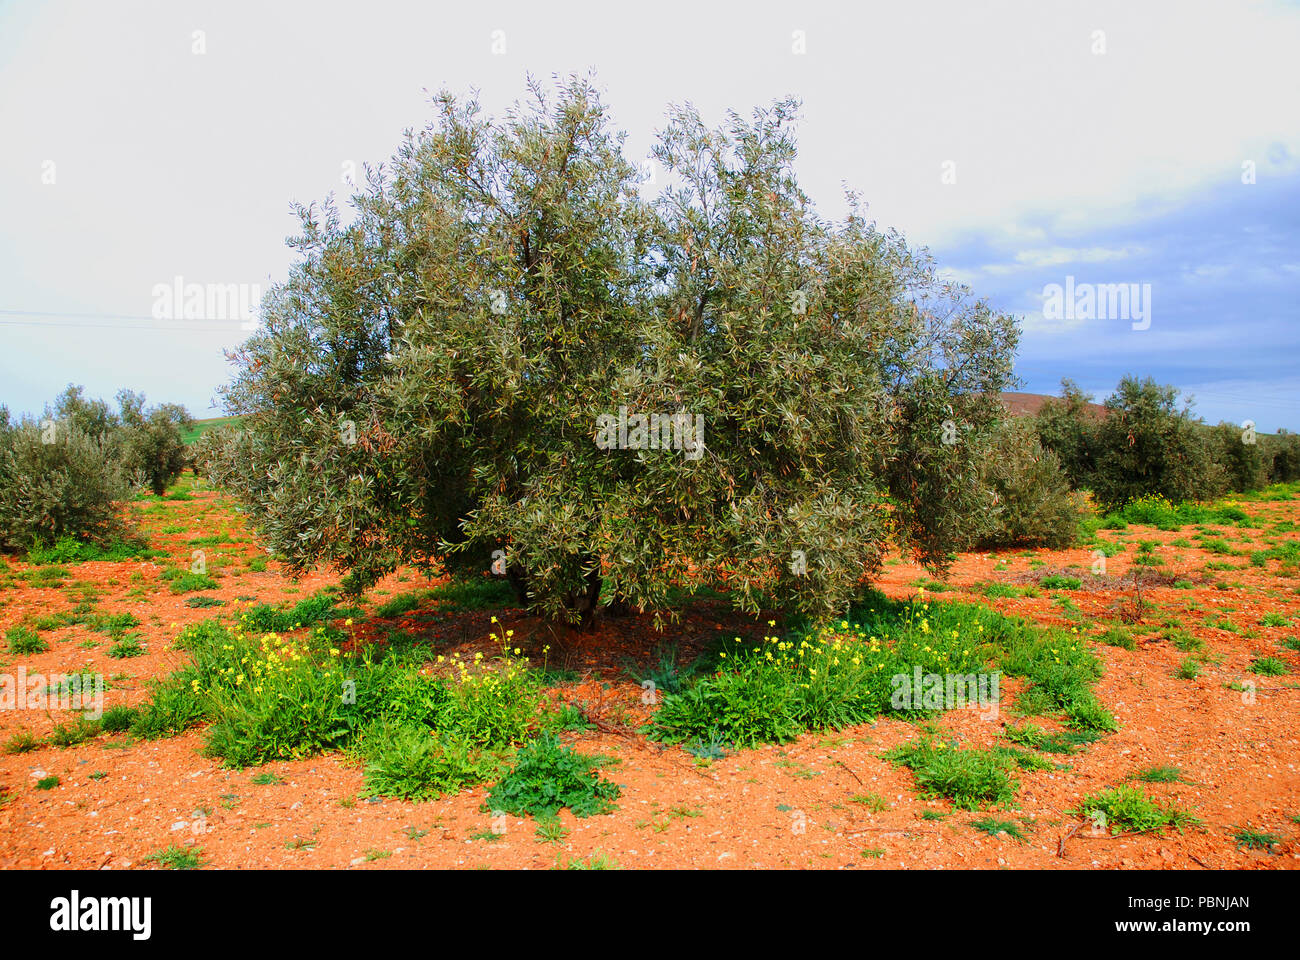 Olive tree. Campo de Calatrava, Ciudad province, Castilla La Mancha, Spain. Stock Photo